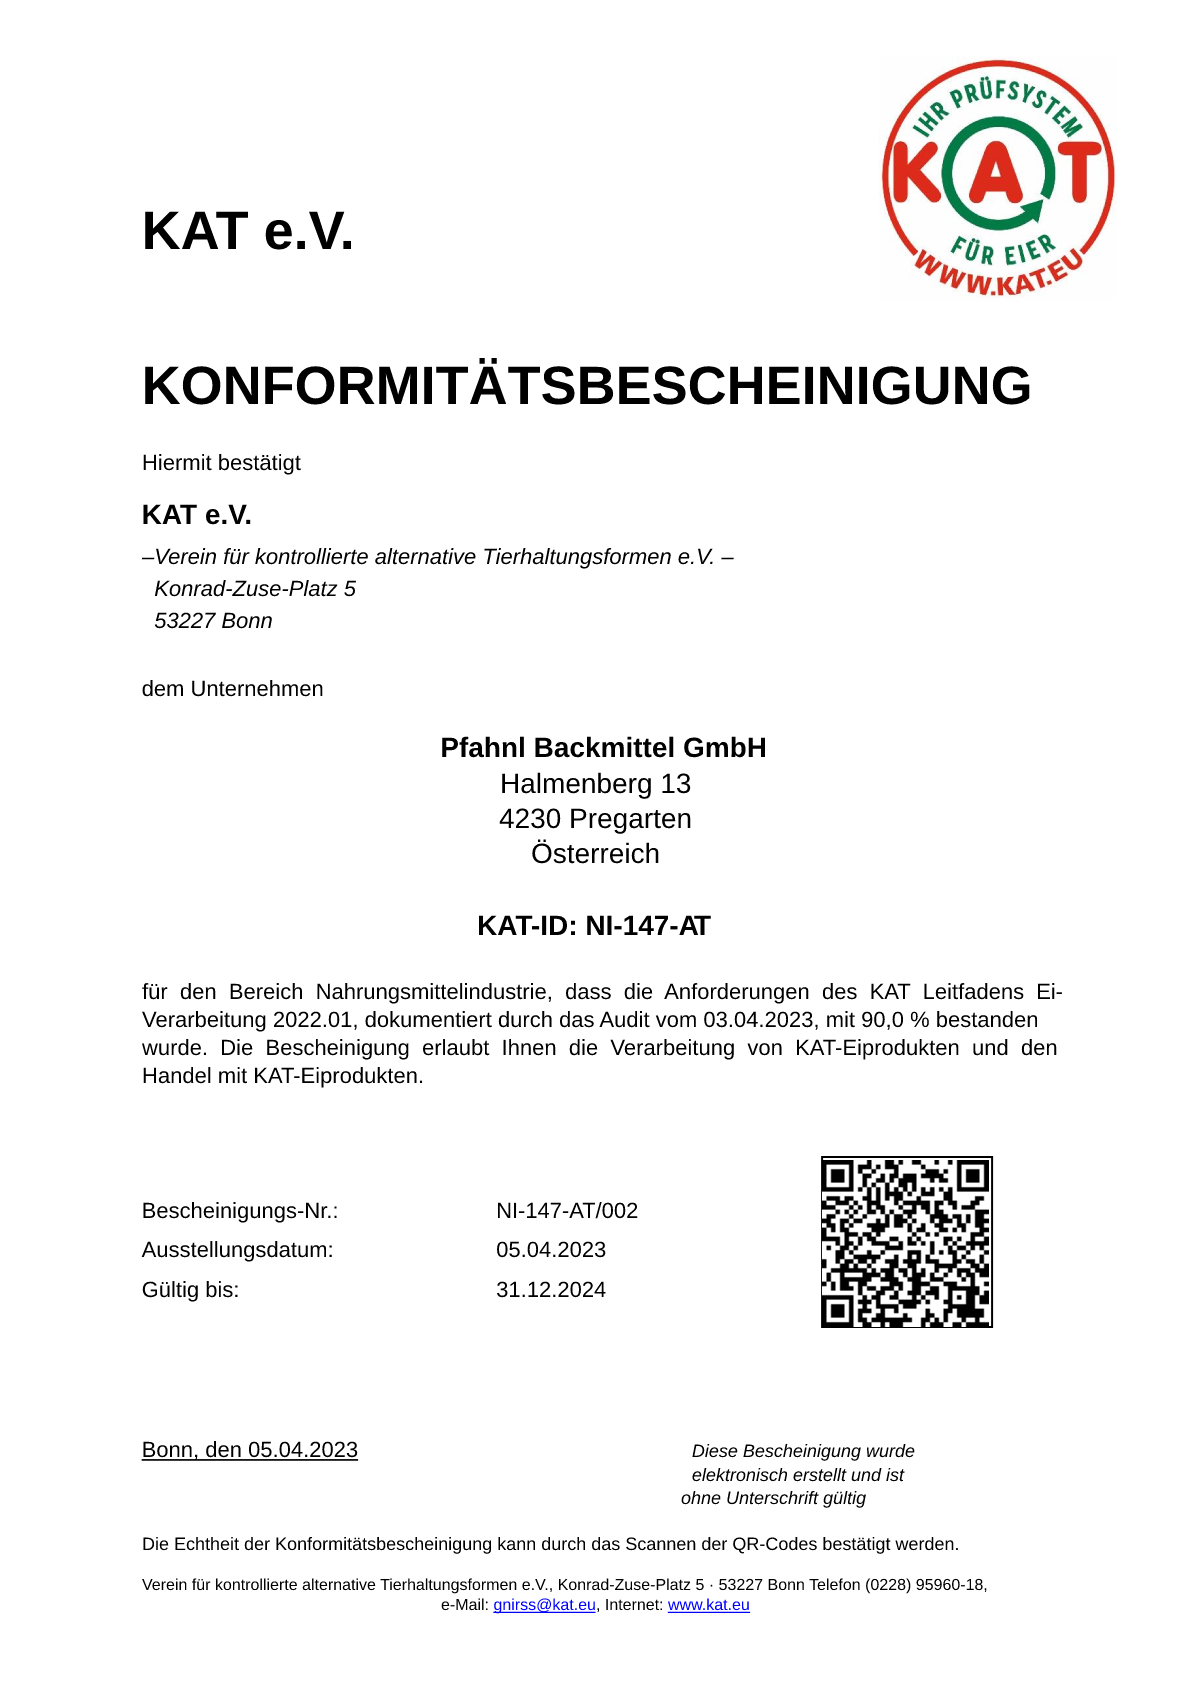 KATBescheinigung_gueltig_bis_2024_12_31.pdf